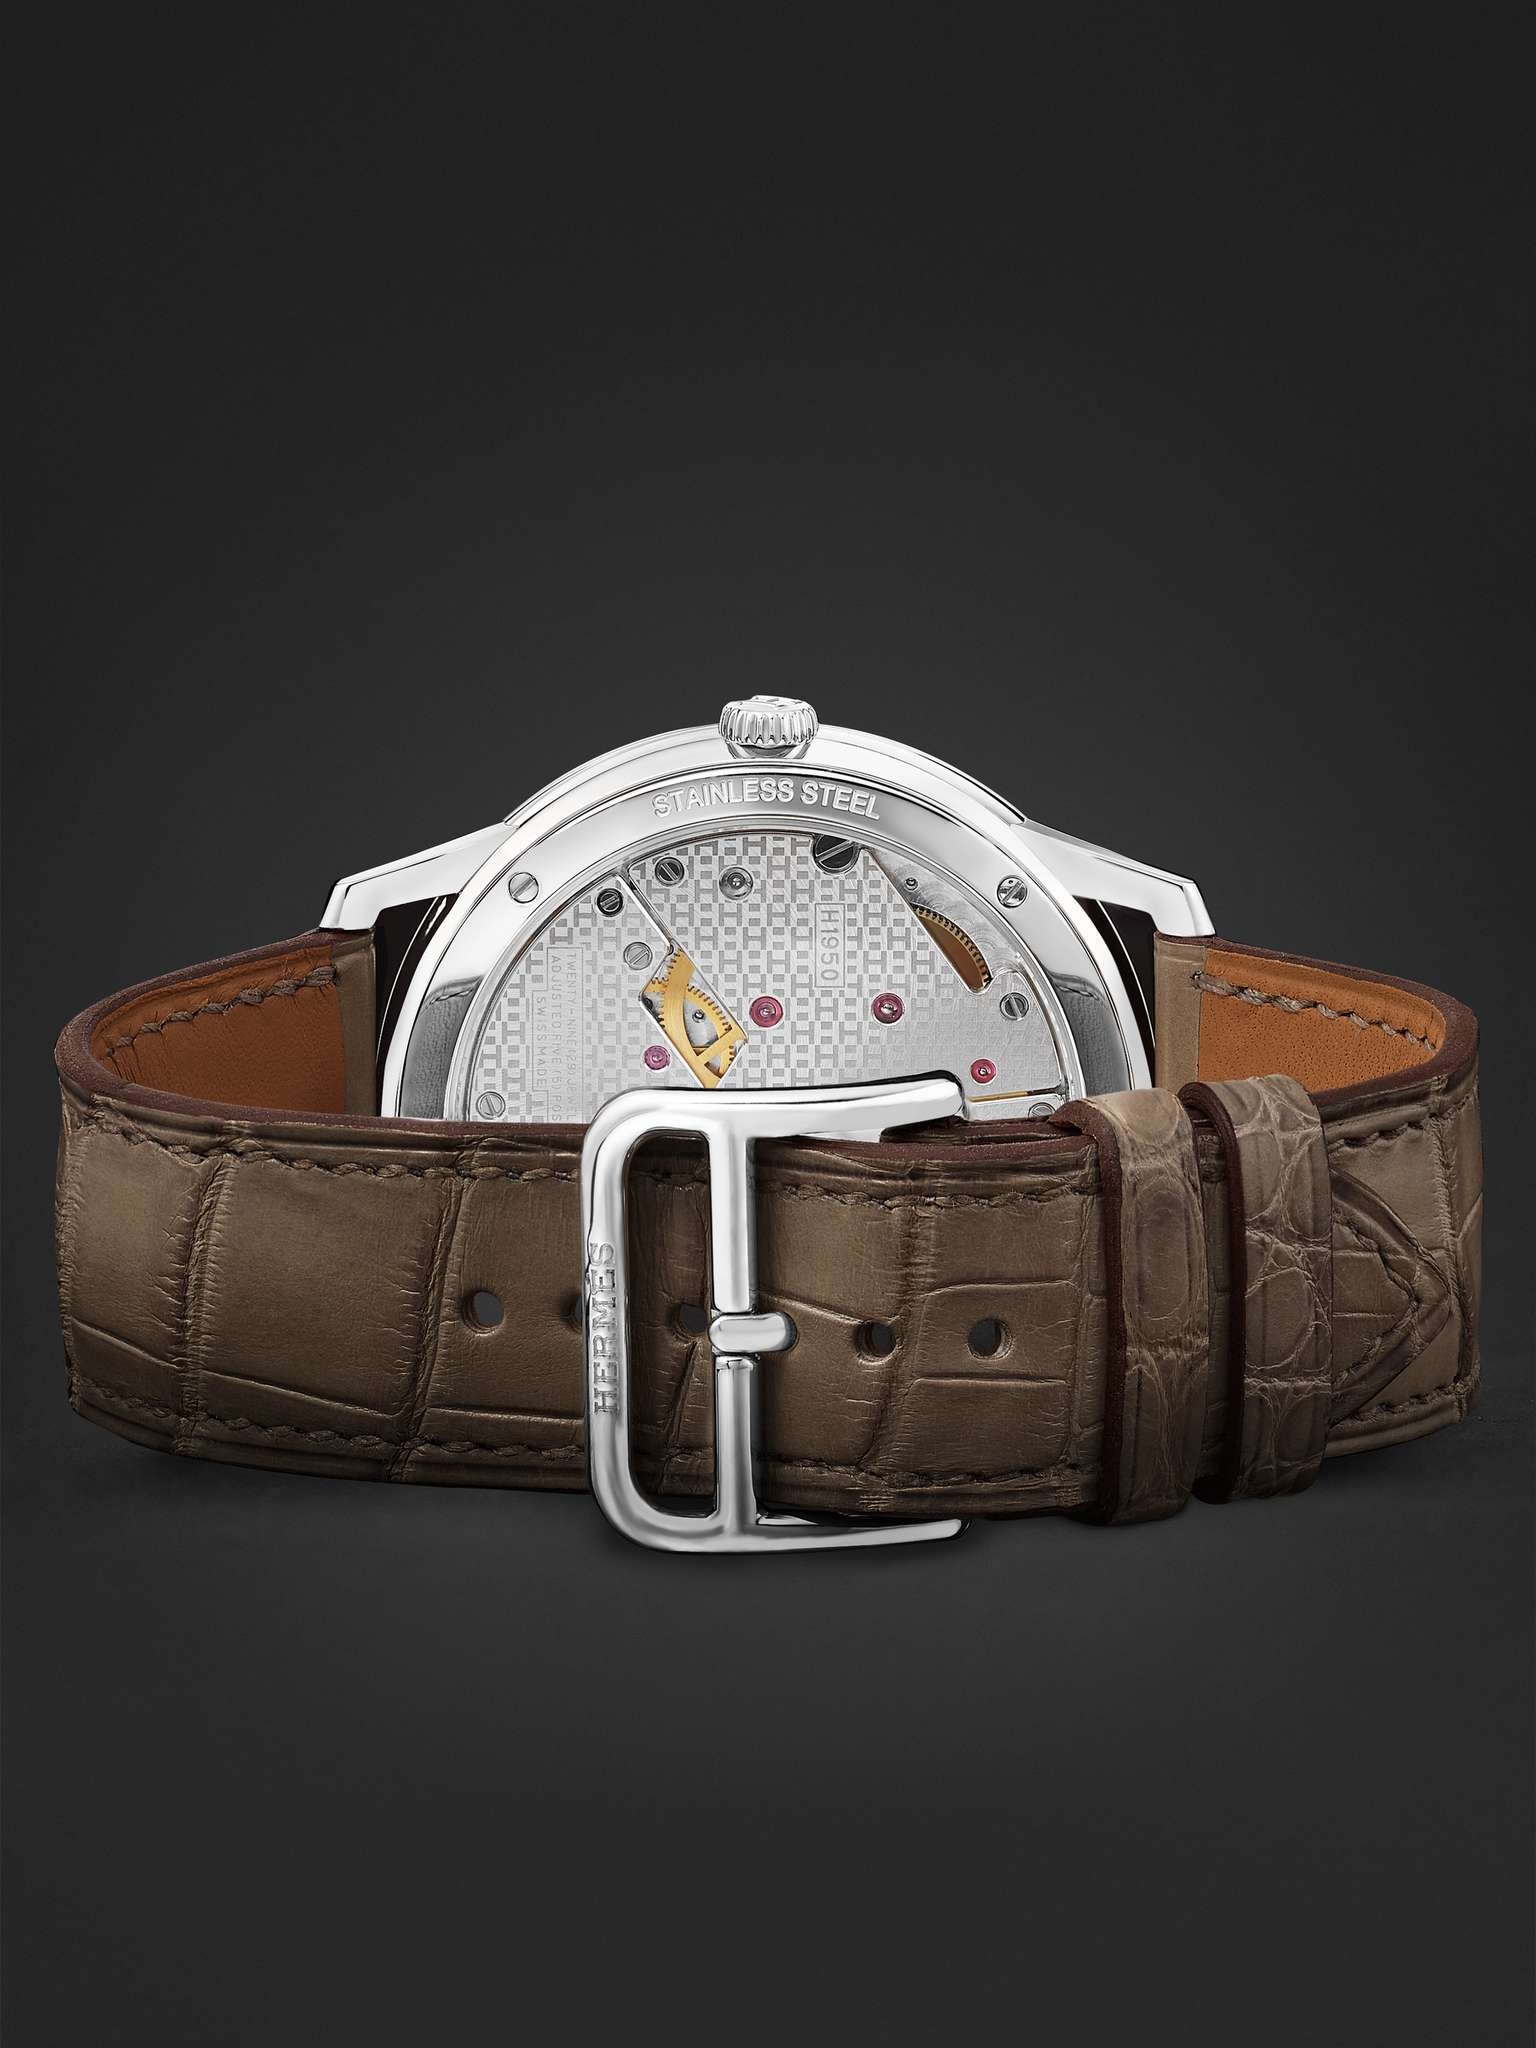 Slim d'Hermès Acier Automatic 39.5mm Stainless Steel and Alligator Watch, Ref. No. W045266WW00 - 7